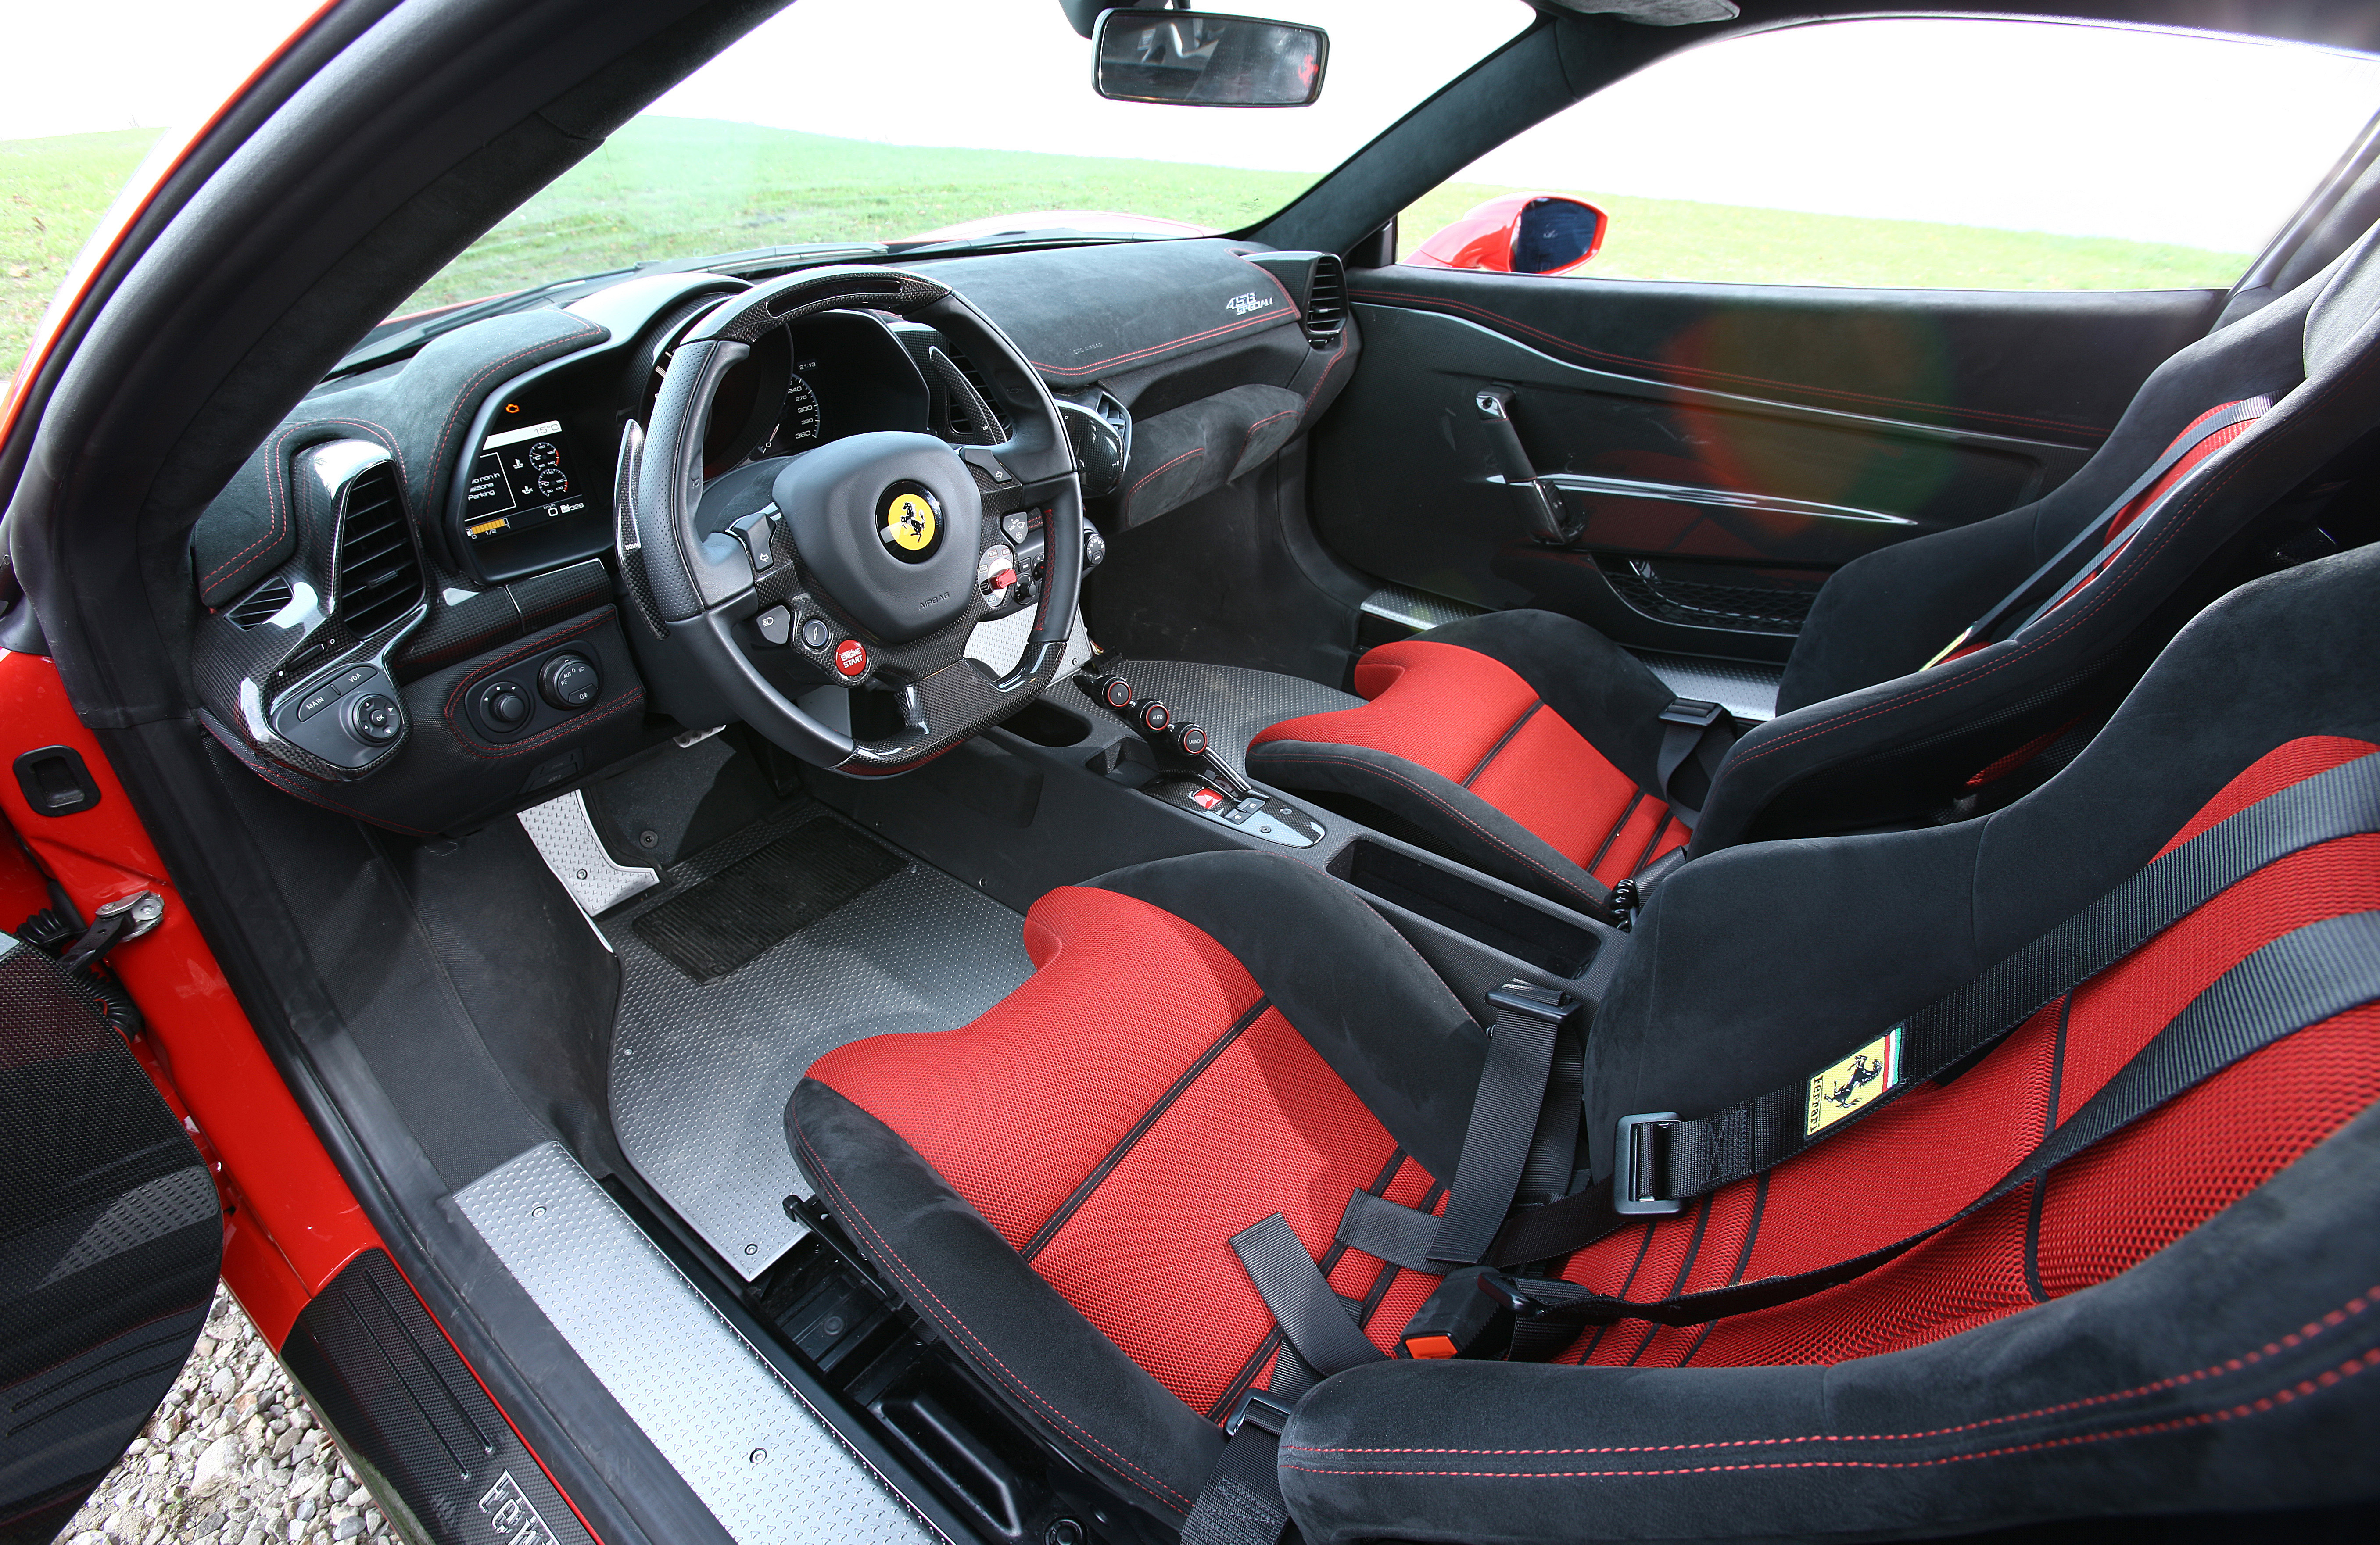 Ferrari Ariotomotive